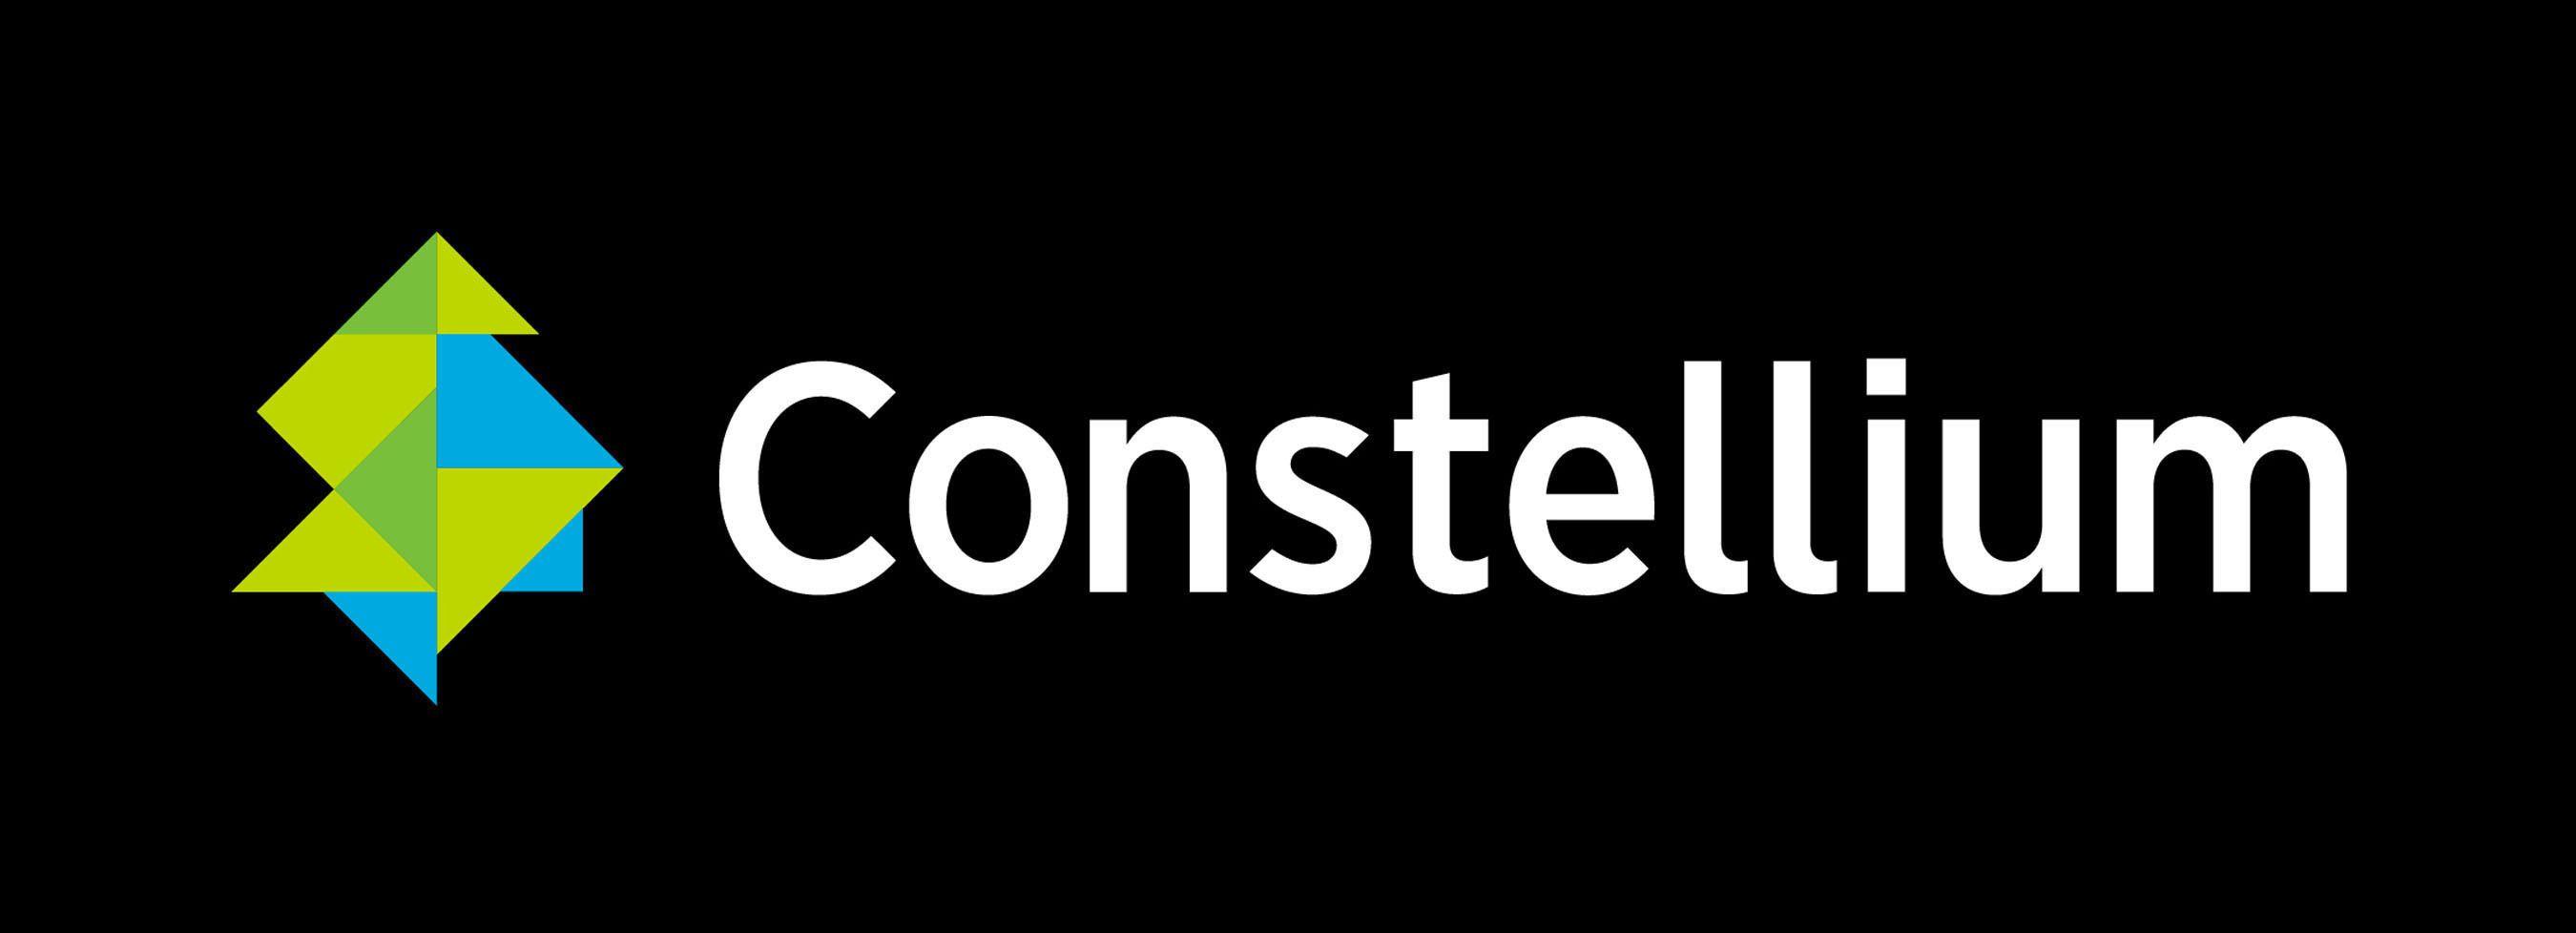 Potosi Logo - Constellium to open a new manufacturing facility in San Luis Potosí ...